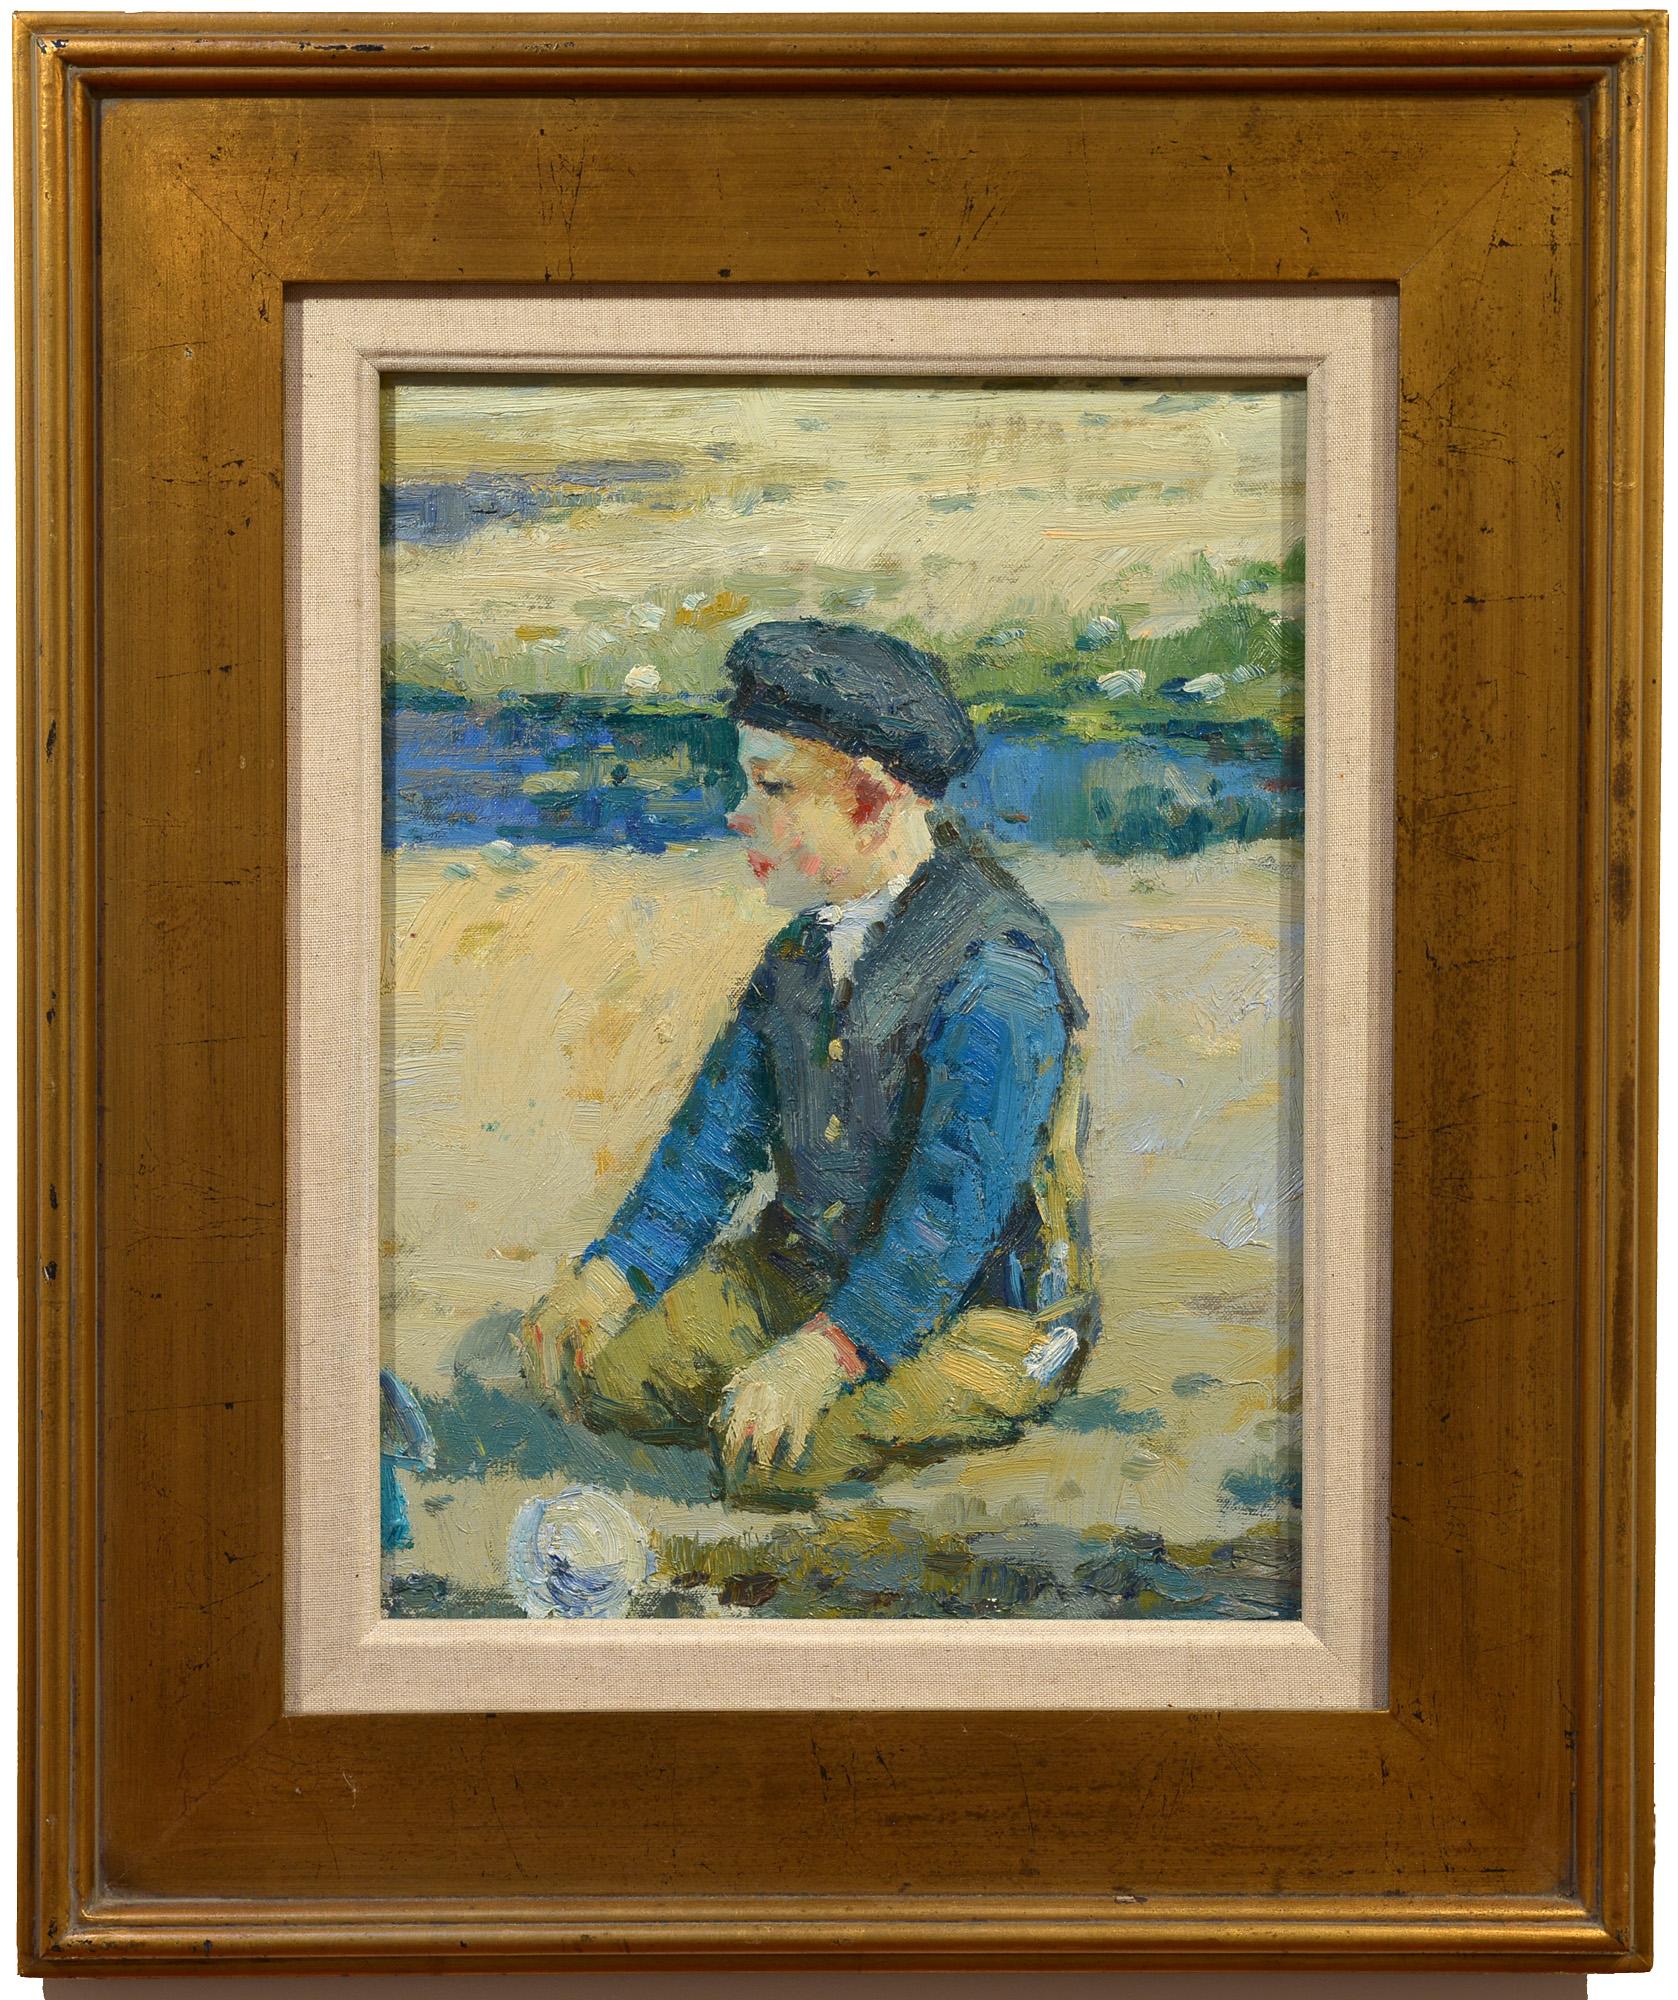 At Seashore, Europäische Schule, Mitte des 20. Jahrhunderts, Kind am Strand sitzend, Kind sitzend – Painting von Unknown